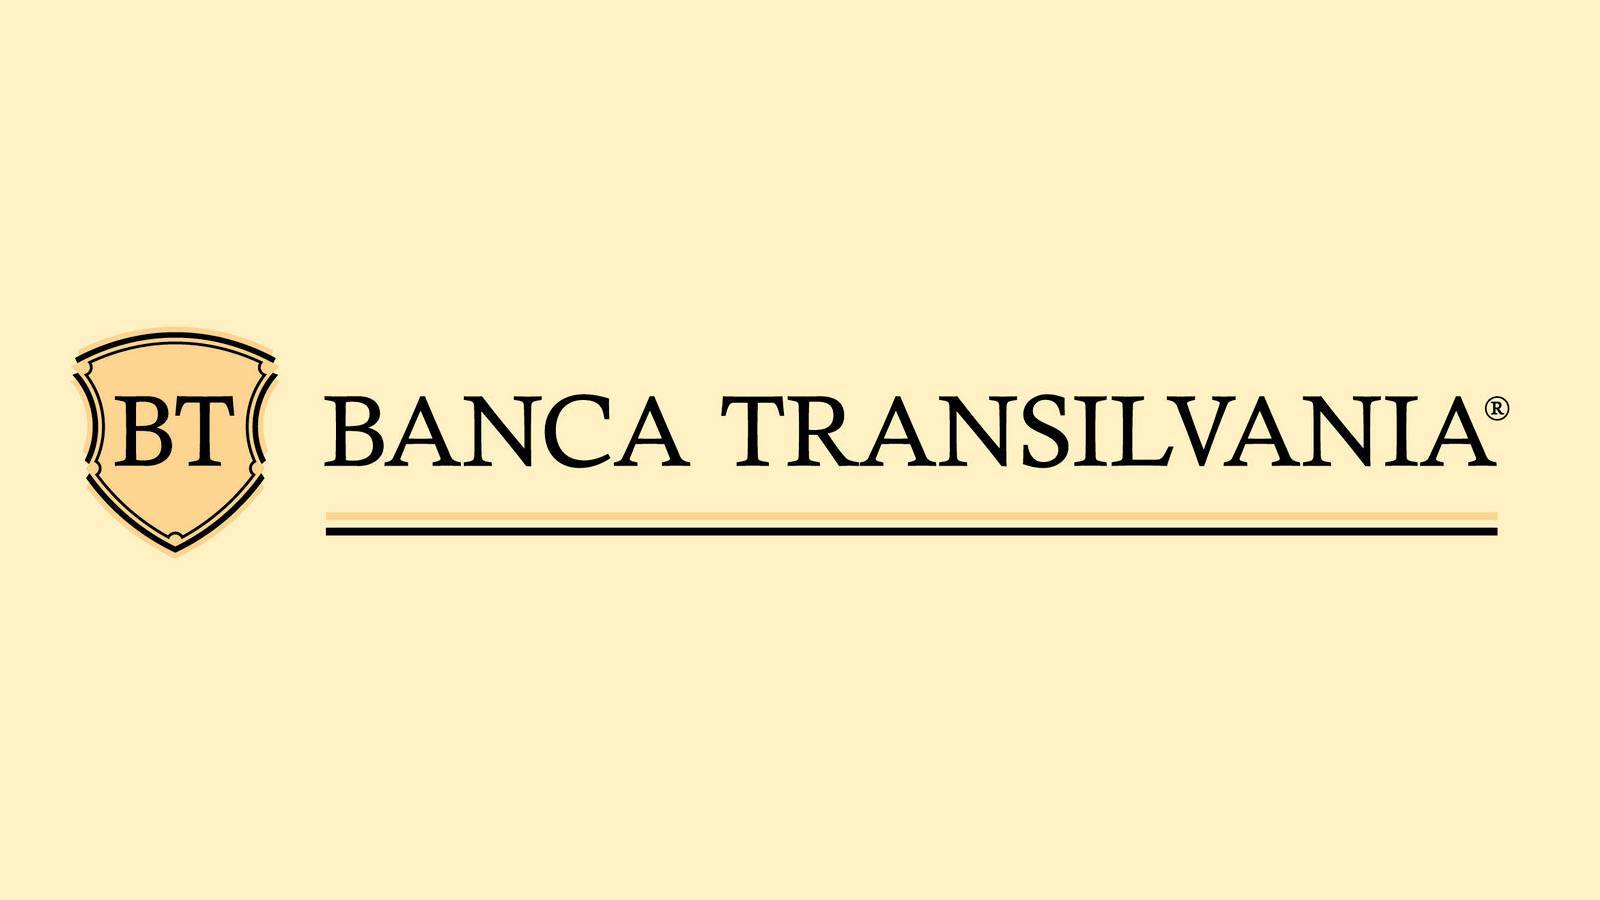 Beslissing BANCA Transilvania OFFICIEEL aangekondigd Klanten moeten het weten